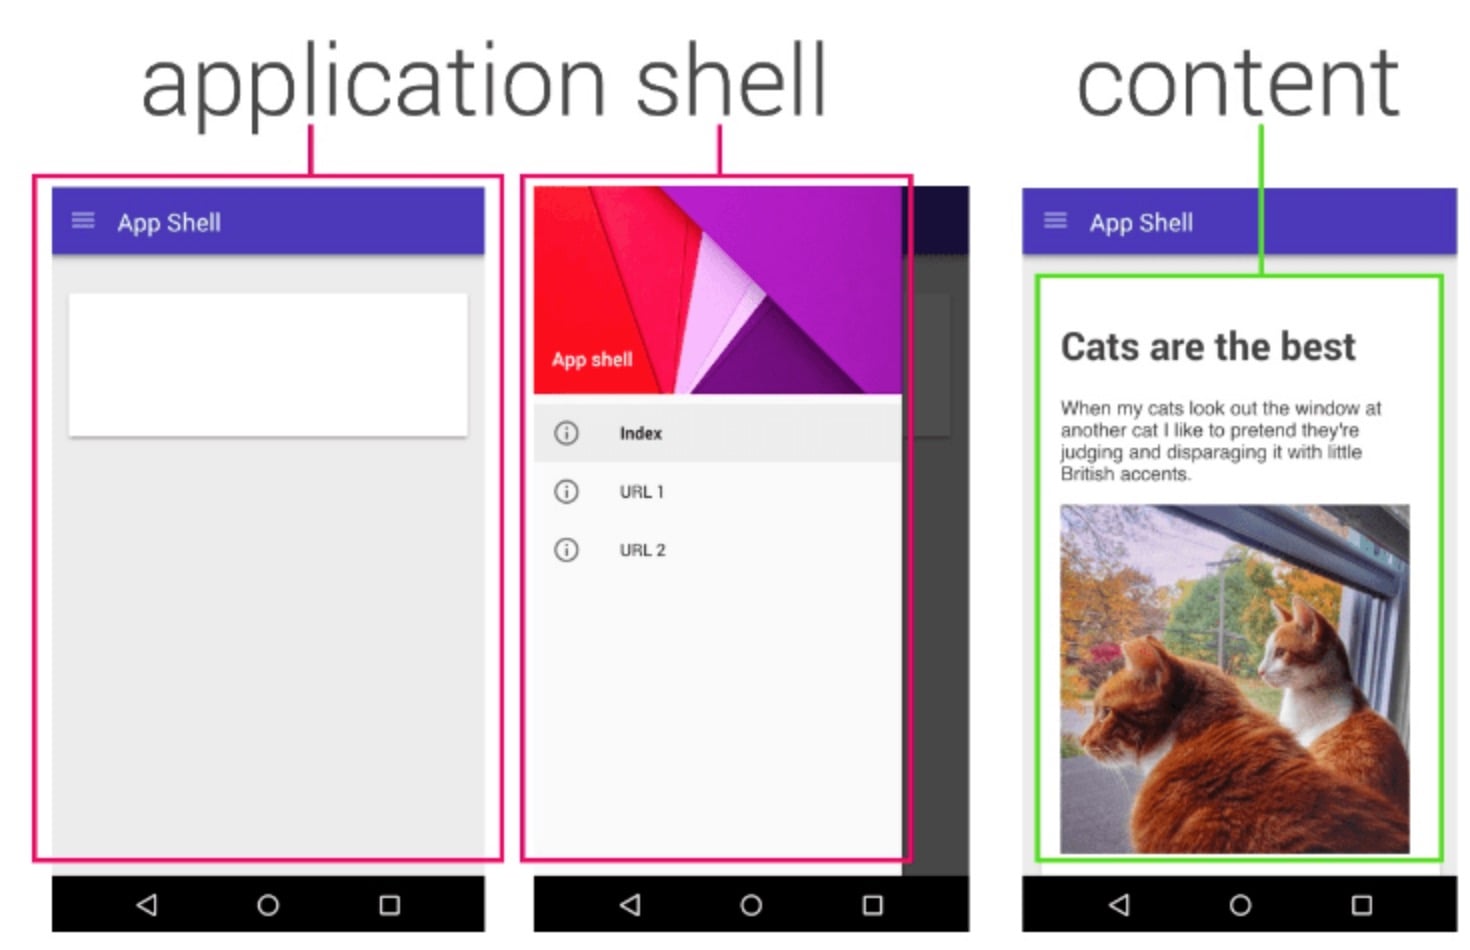 App shell